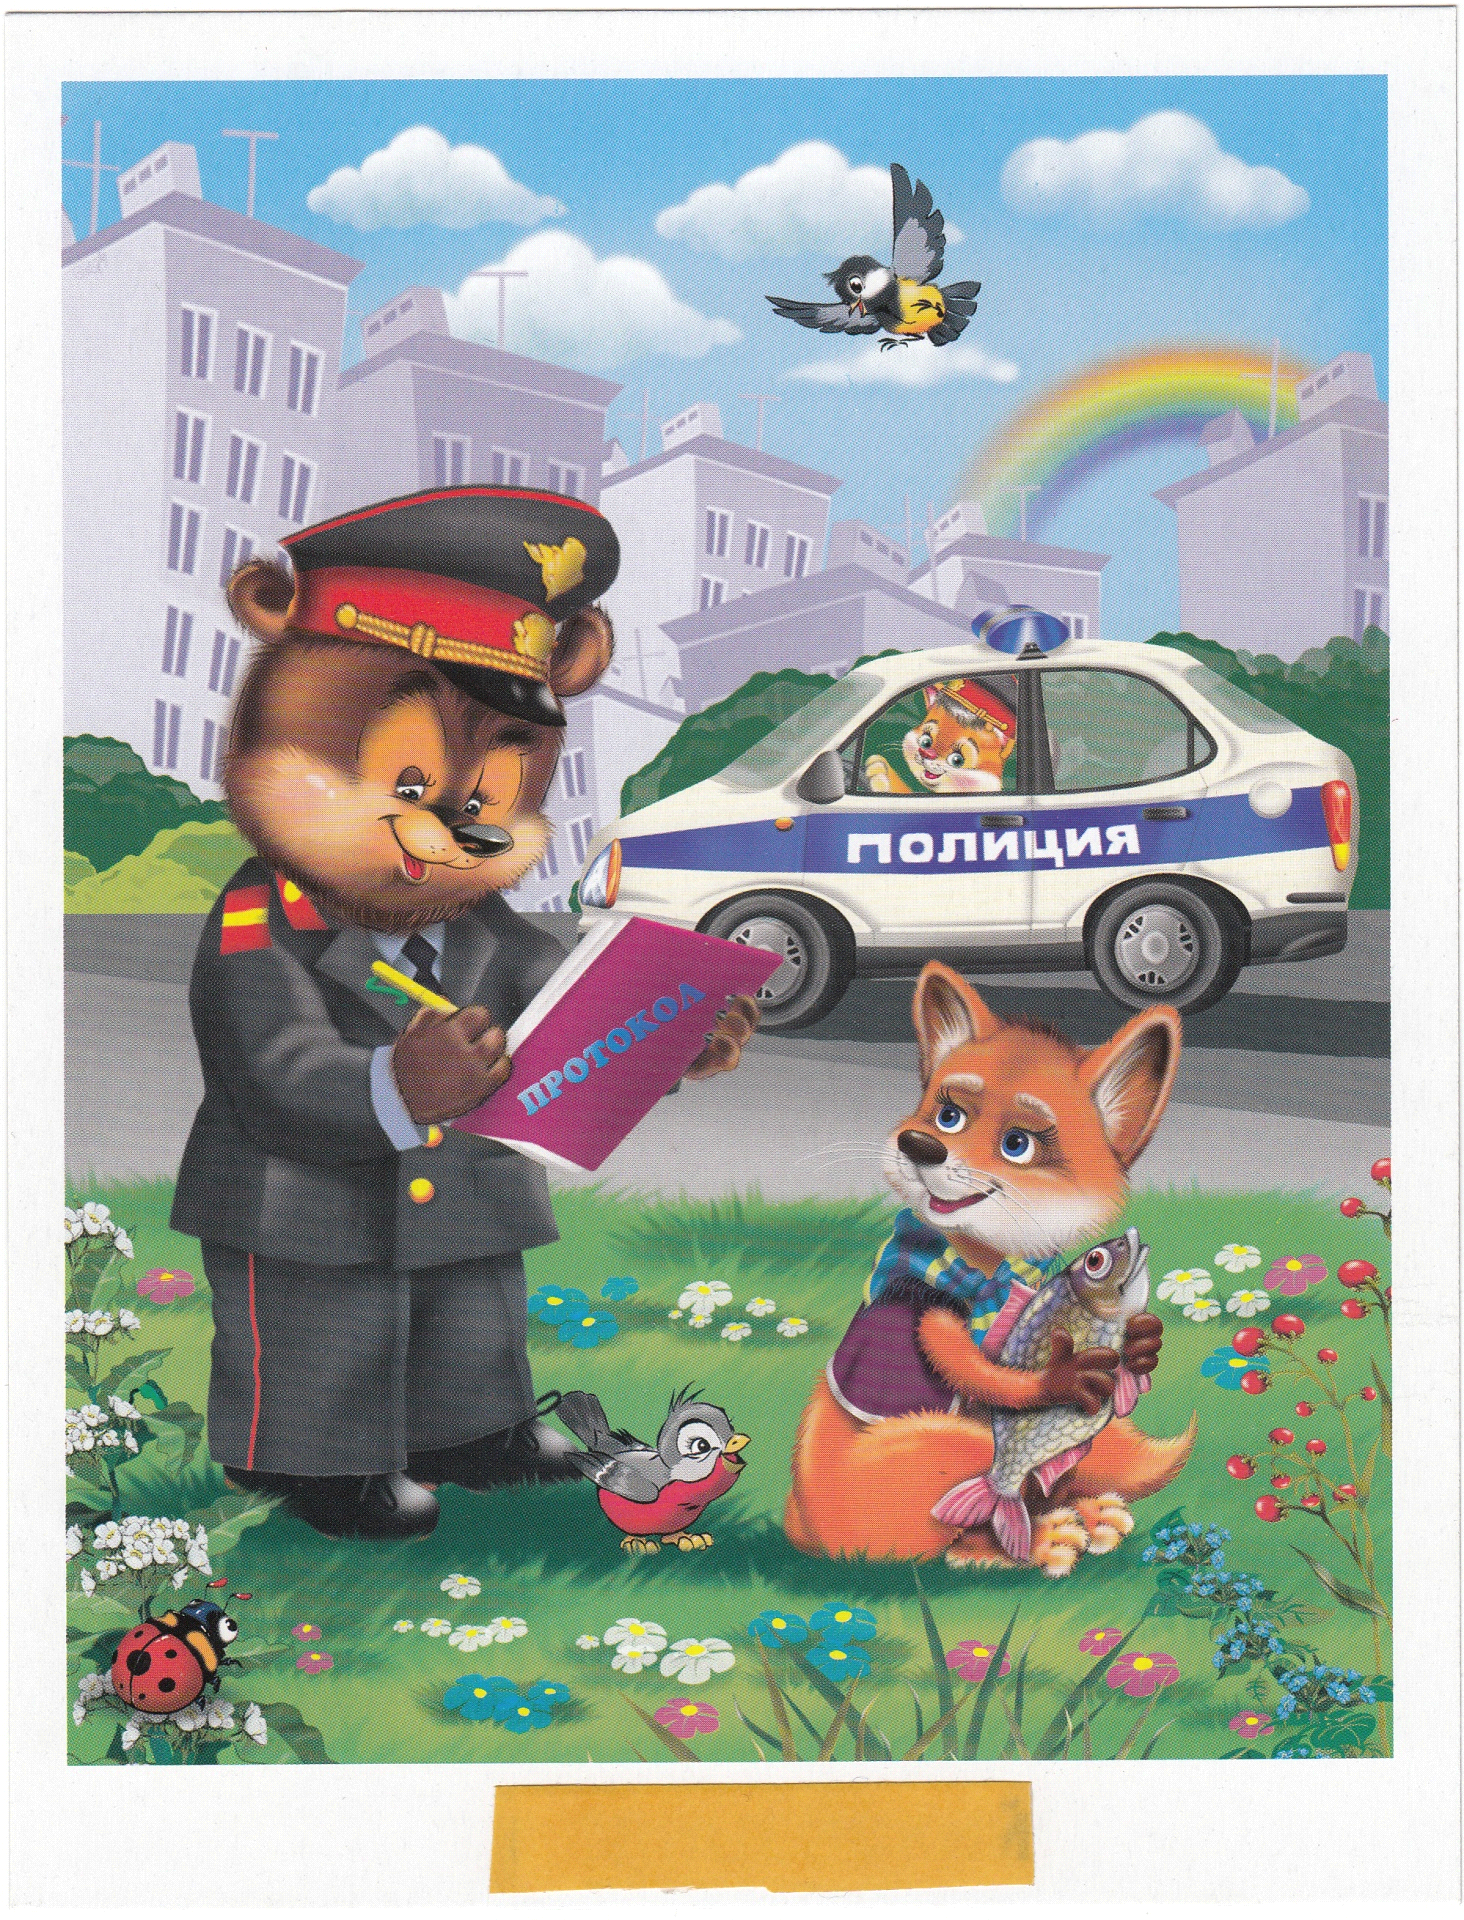 Демонстрационный материал для детского сада полицейский